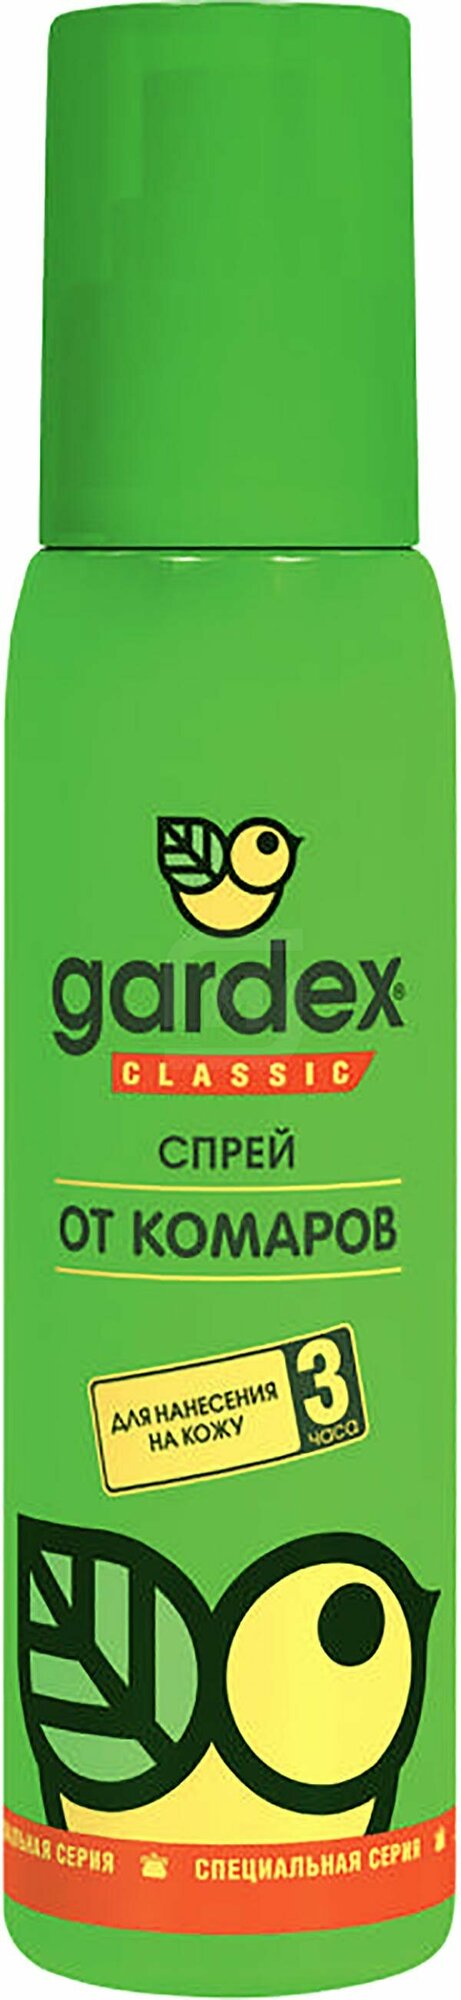 Спрей от комаров Gardex Classic, 100 мл - фото №3